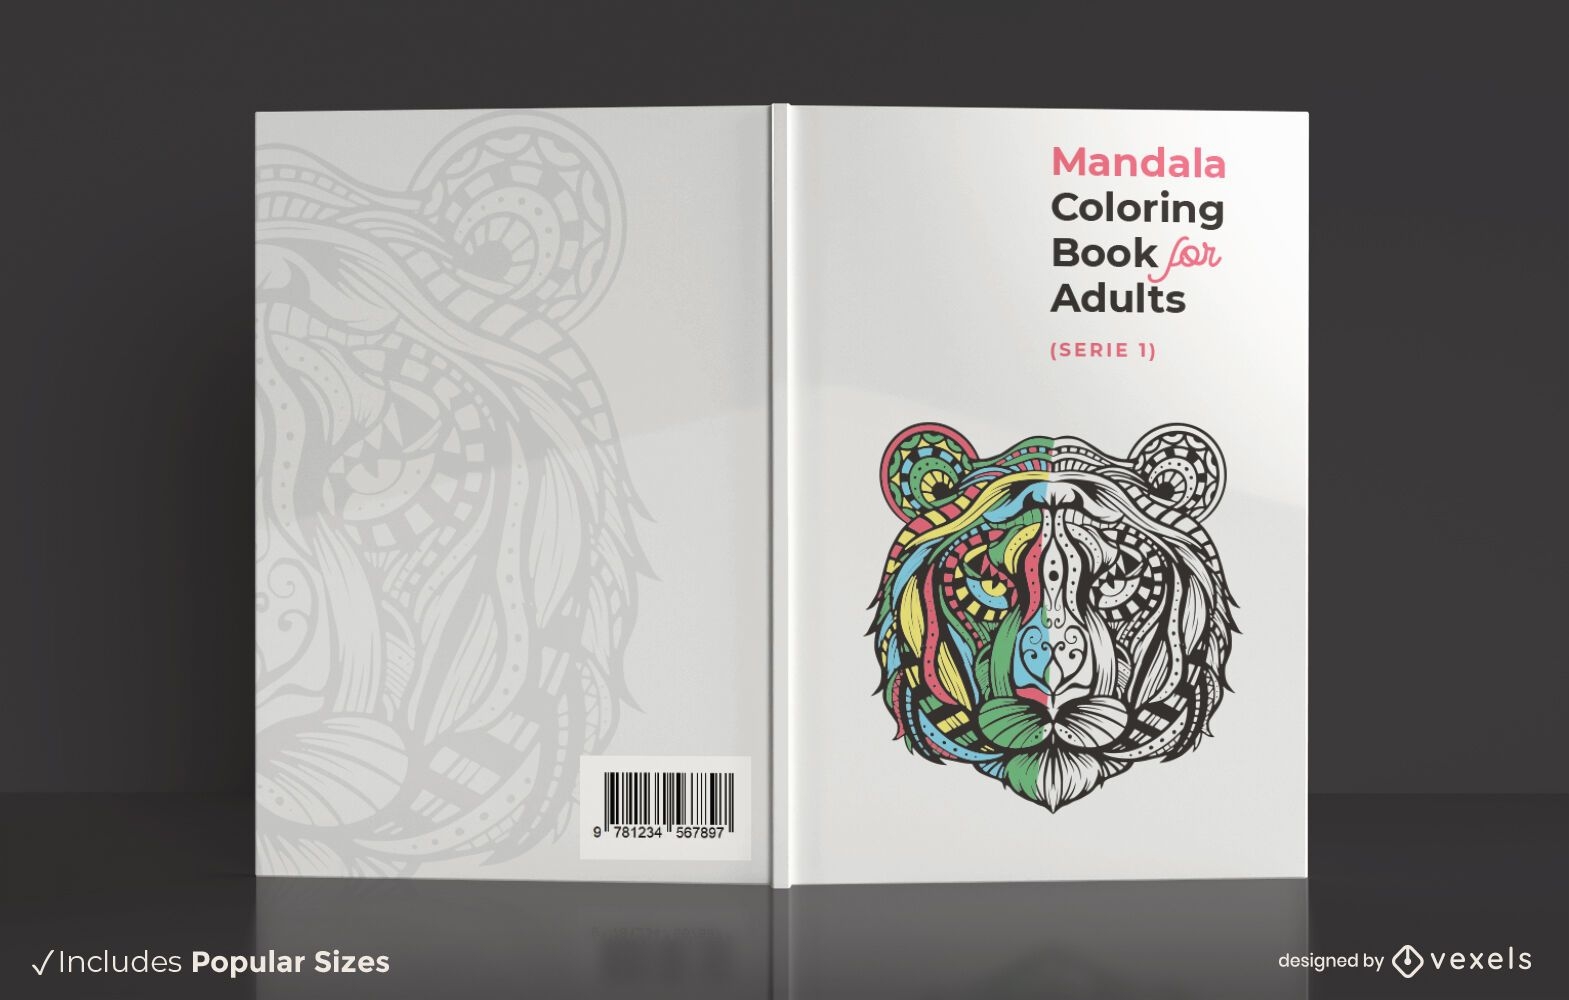 Adult mandala coloring book cover design